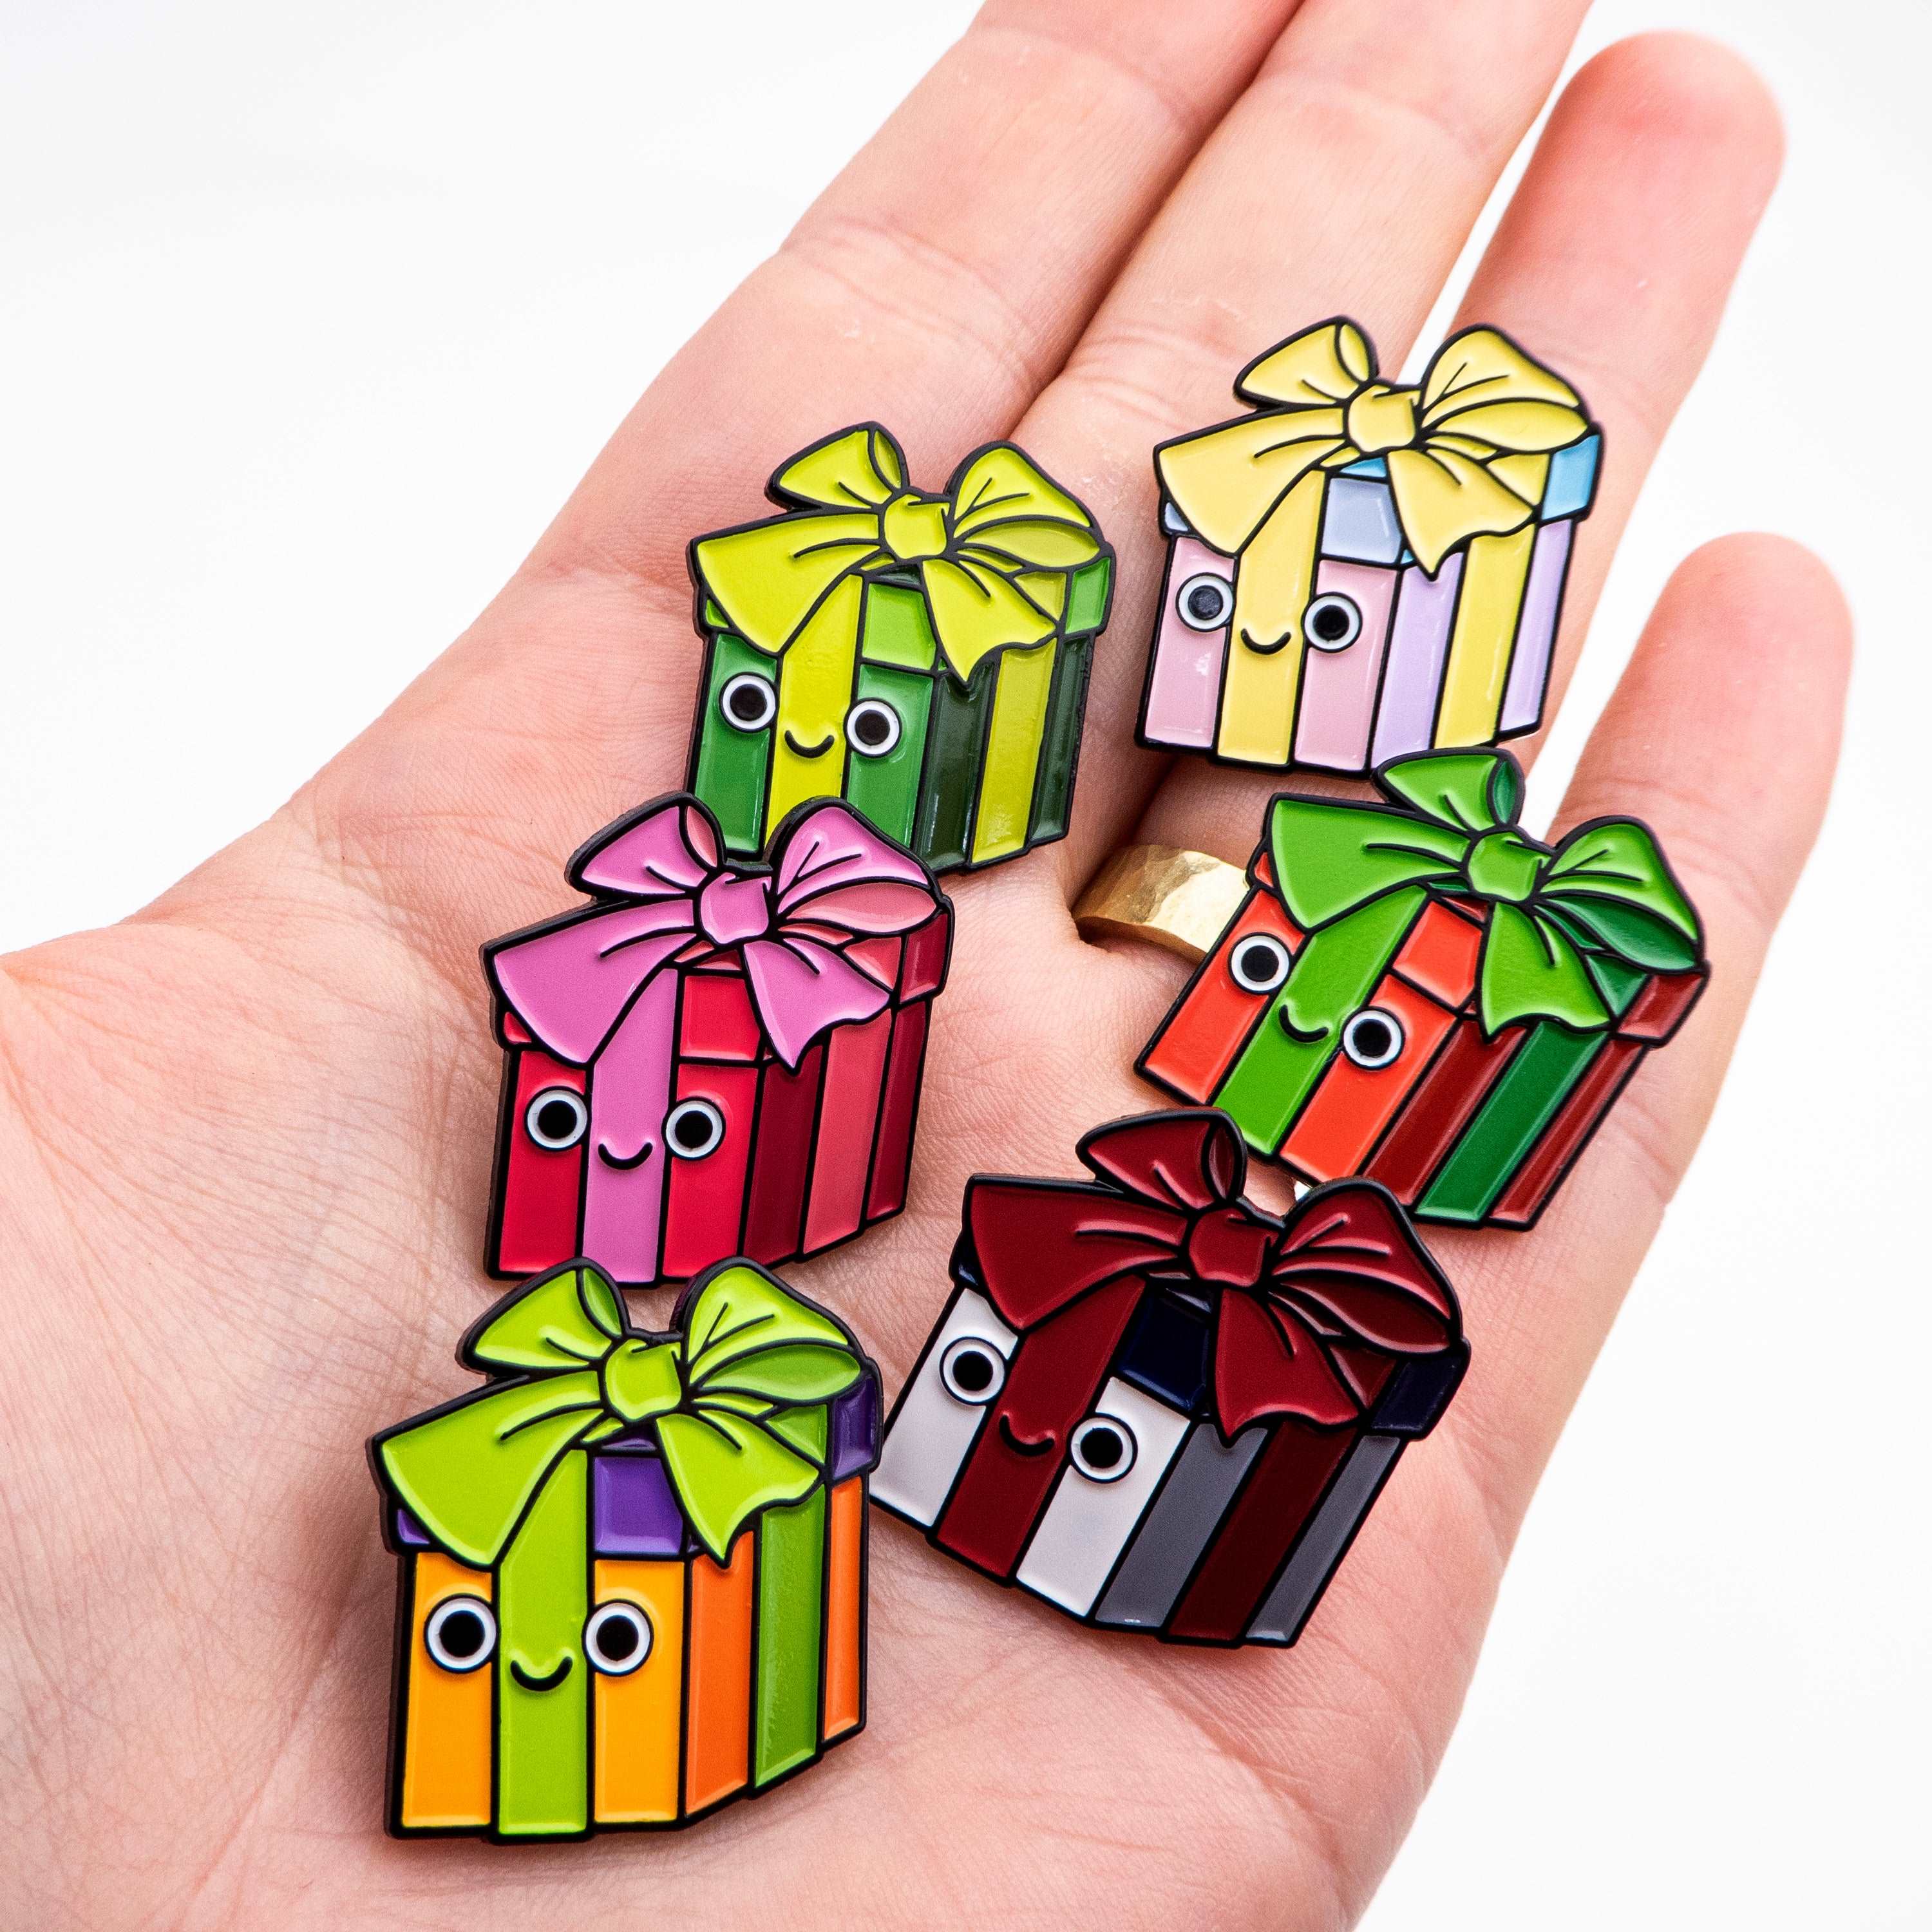 Pin on Christmas presents